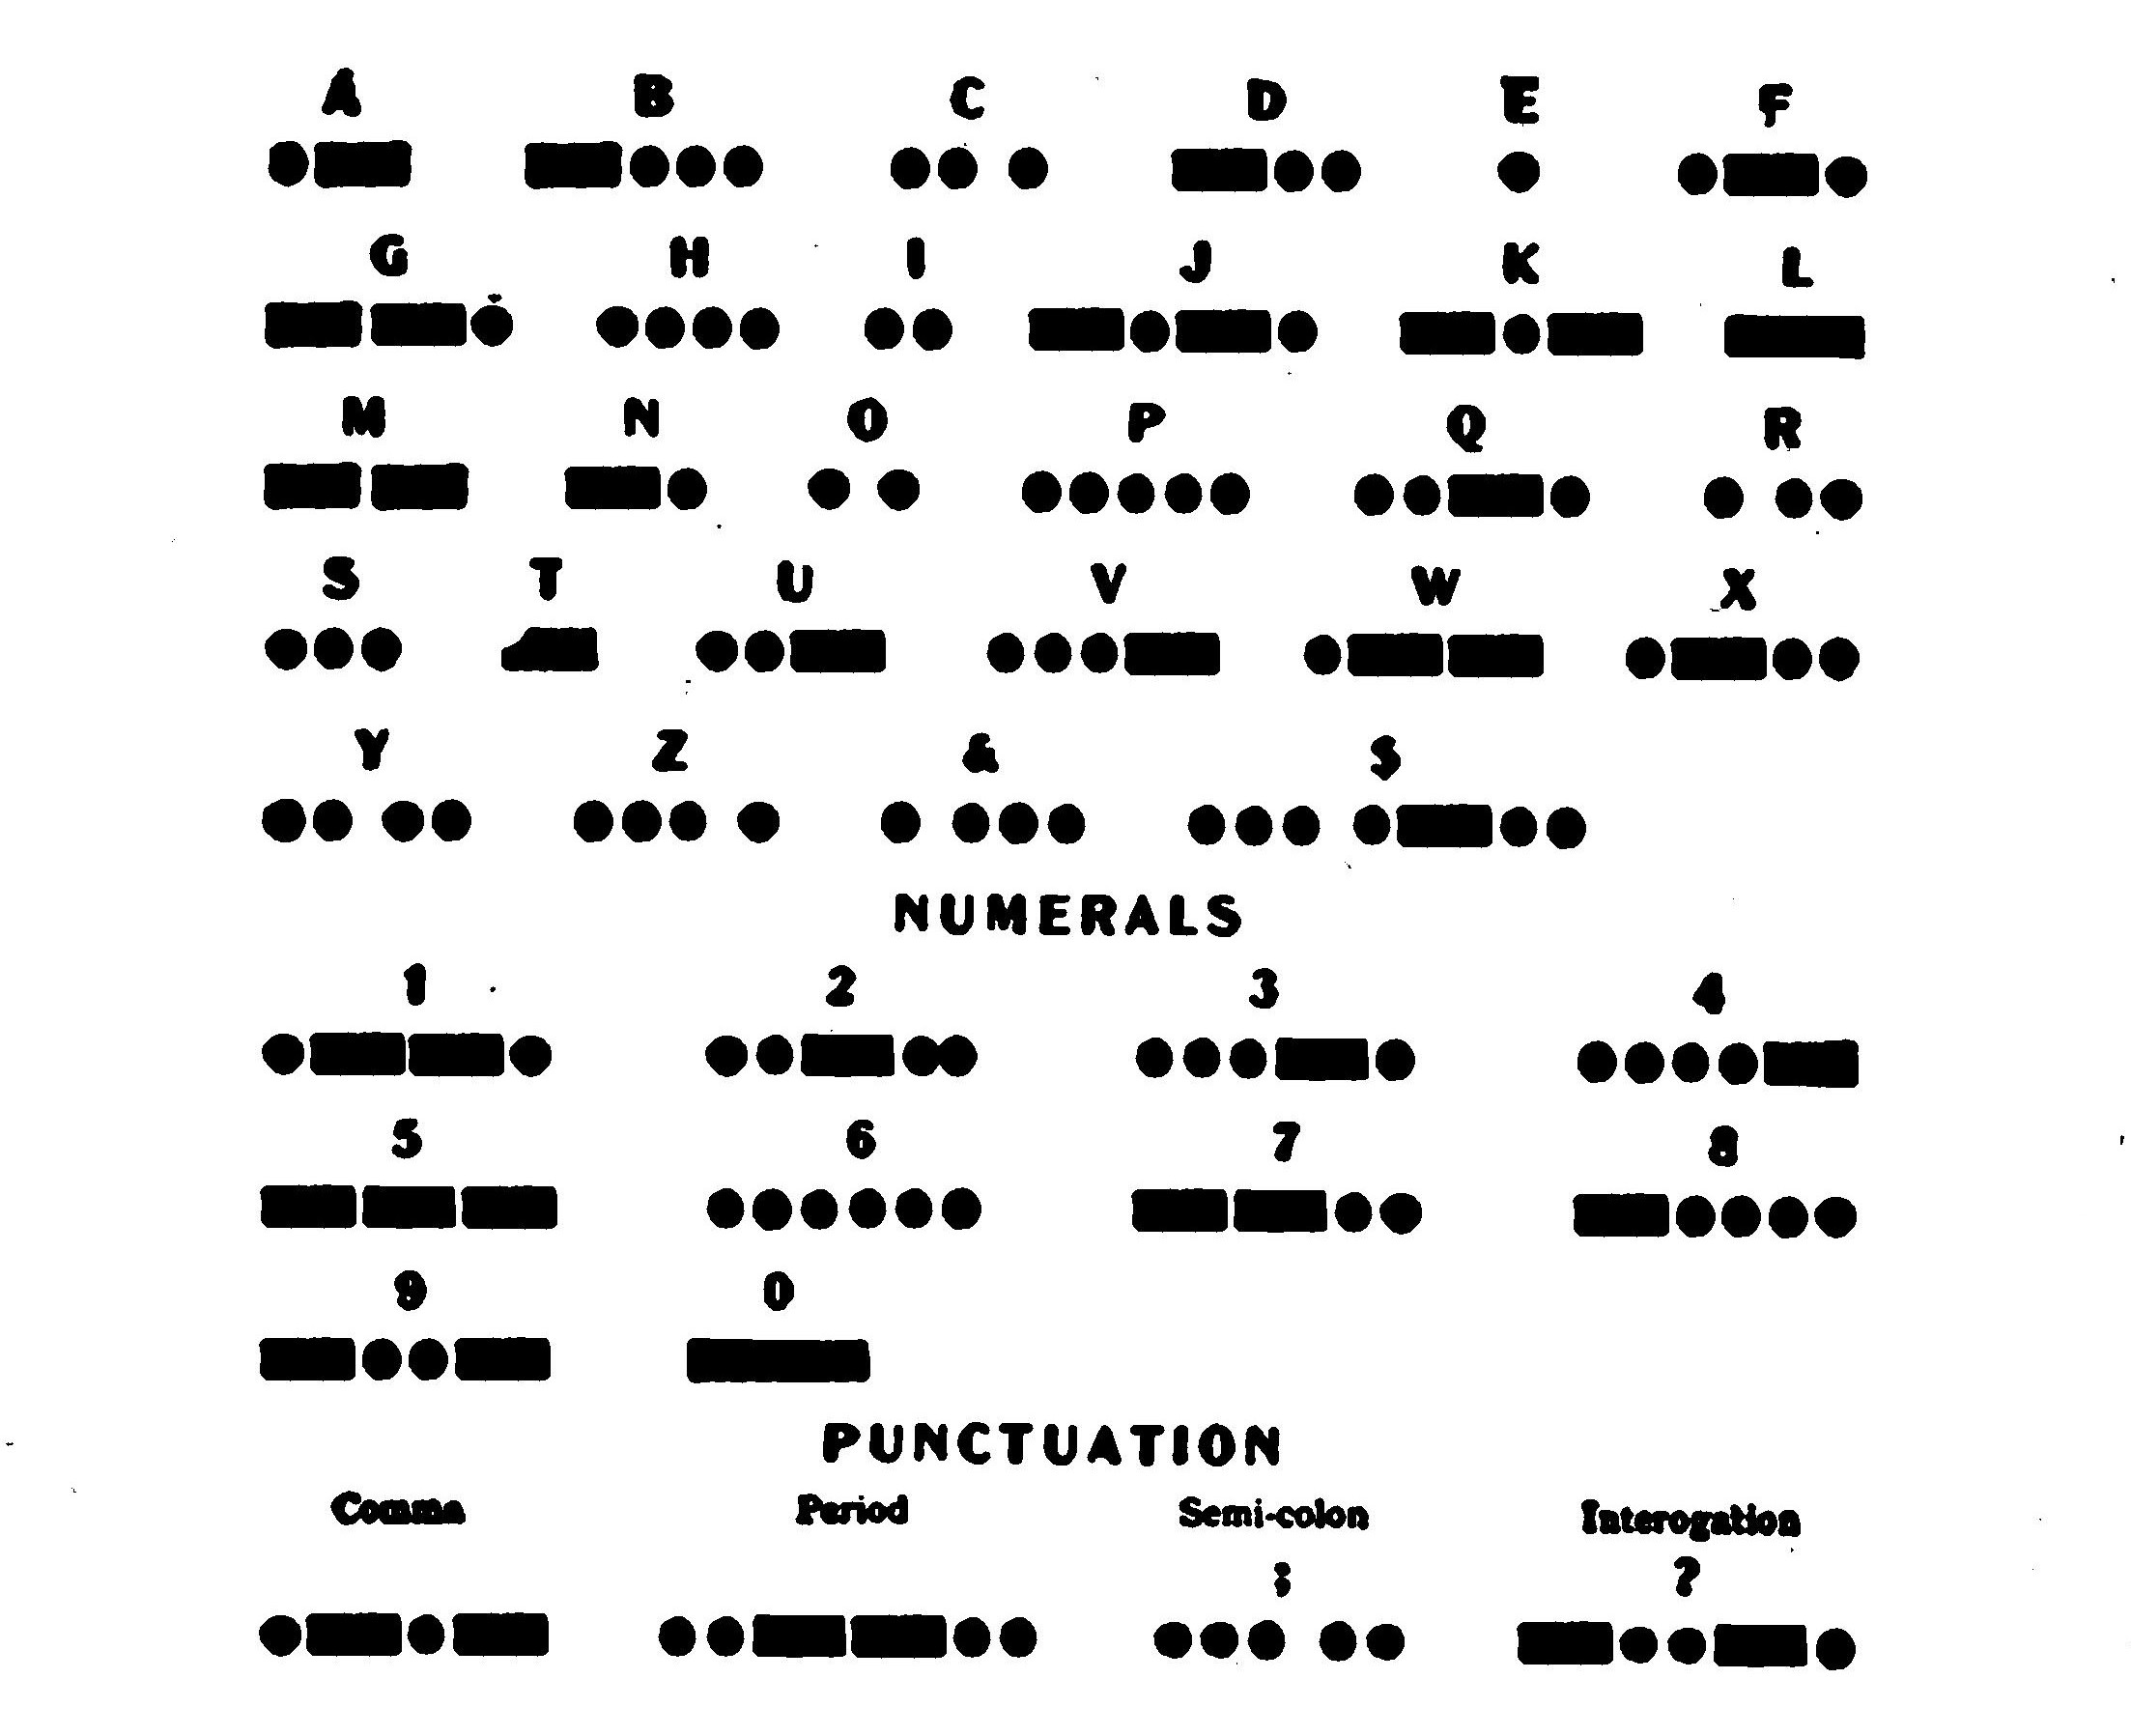 FIG. 114.—Morse code.